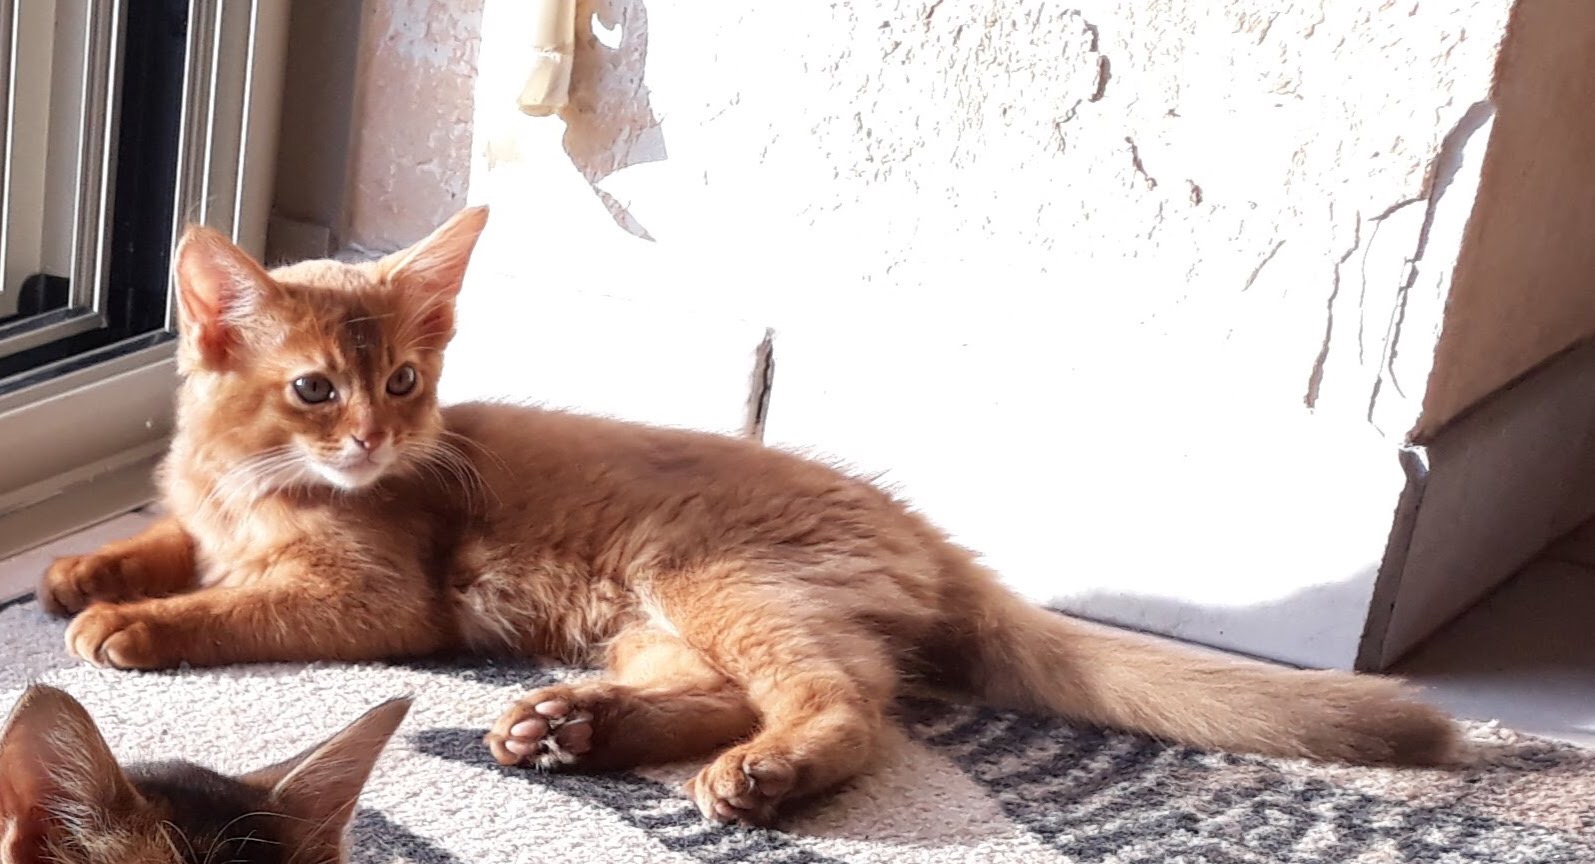 Elevage signé cat's eyes - eleveur de chats Somali